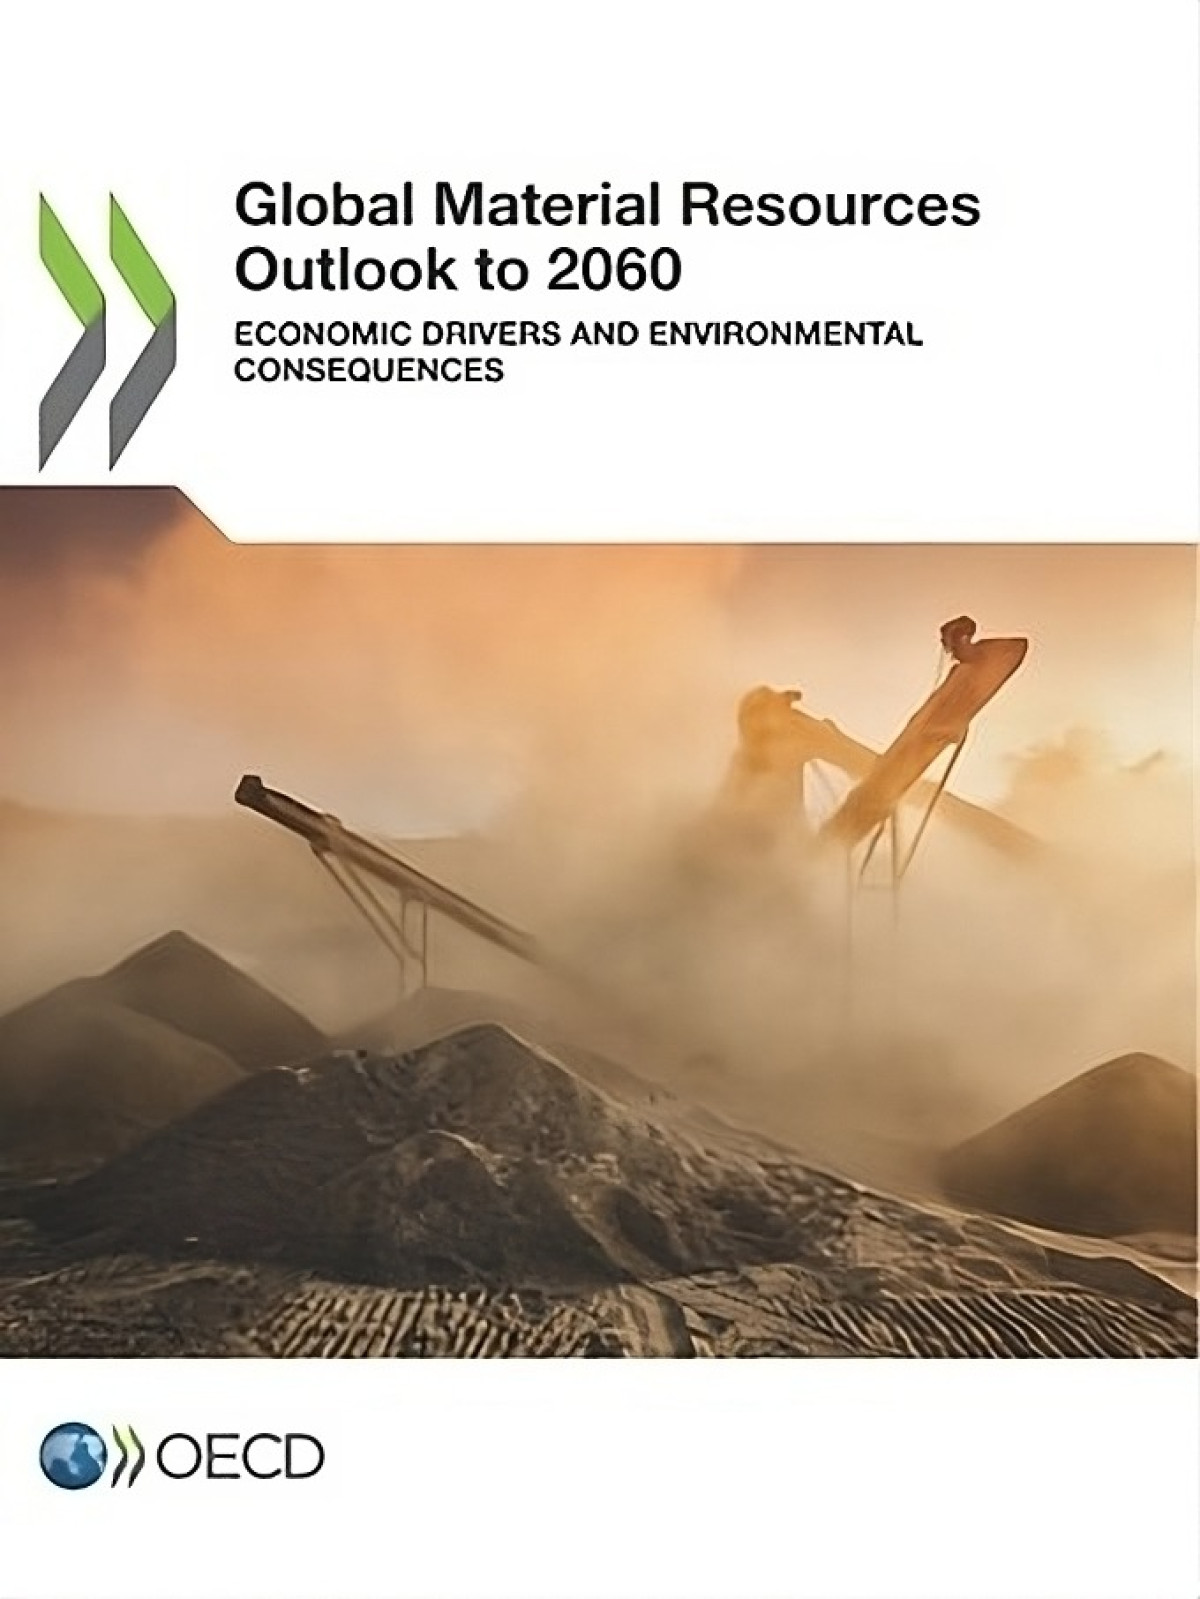 Global Material Resource Outlook to 2060: Ein Blick auf Umweltauswirkungen und wirtschaftliche Treiber